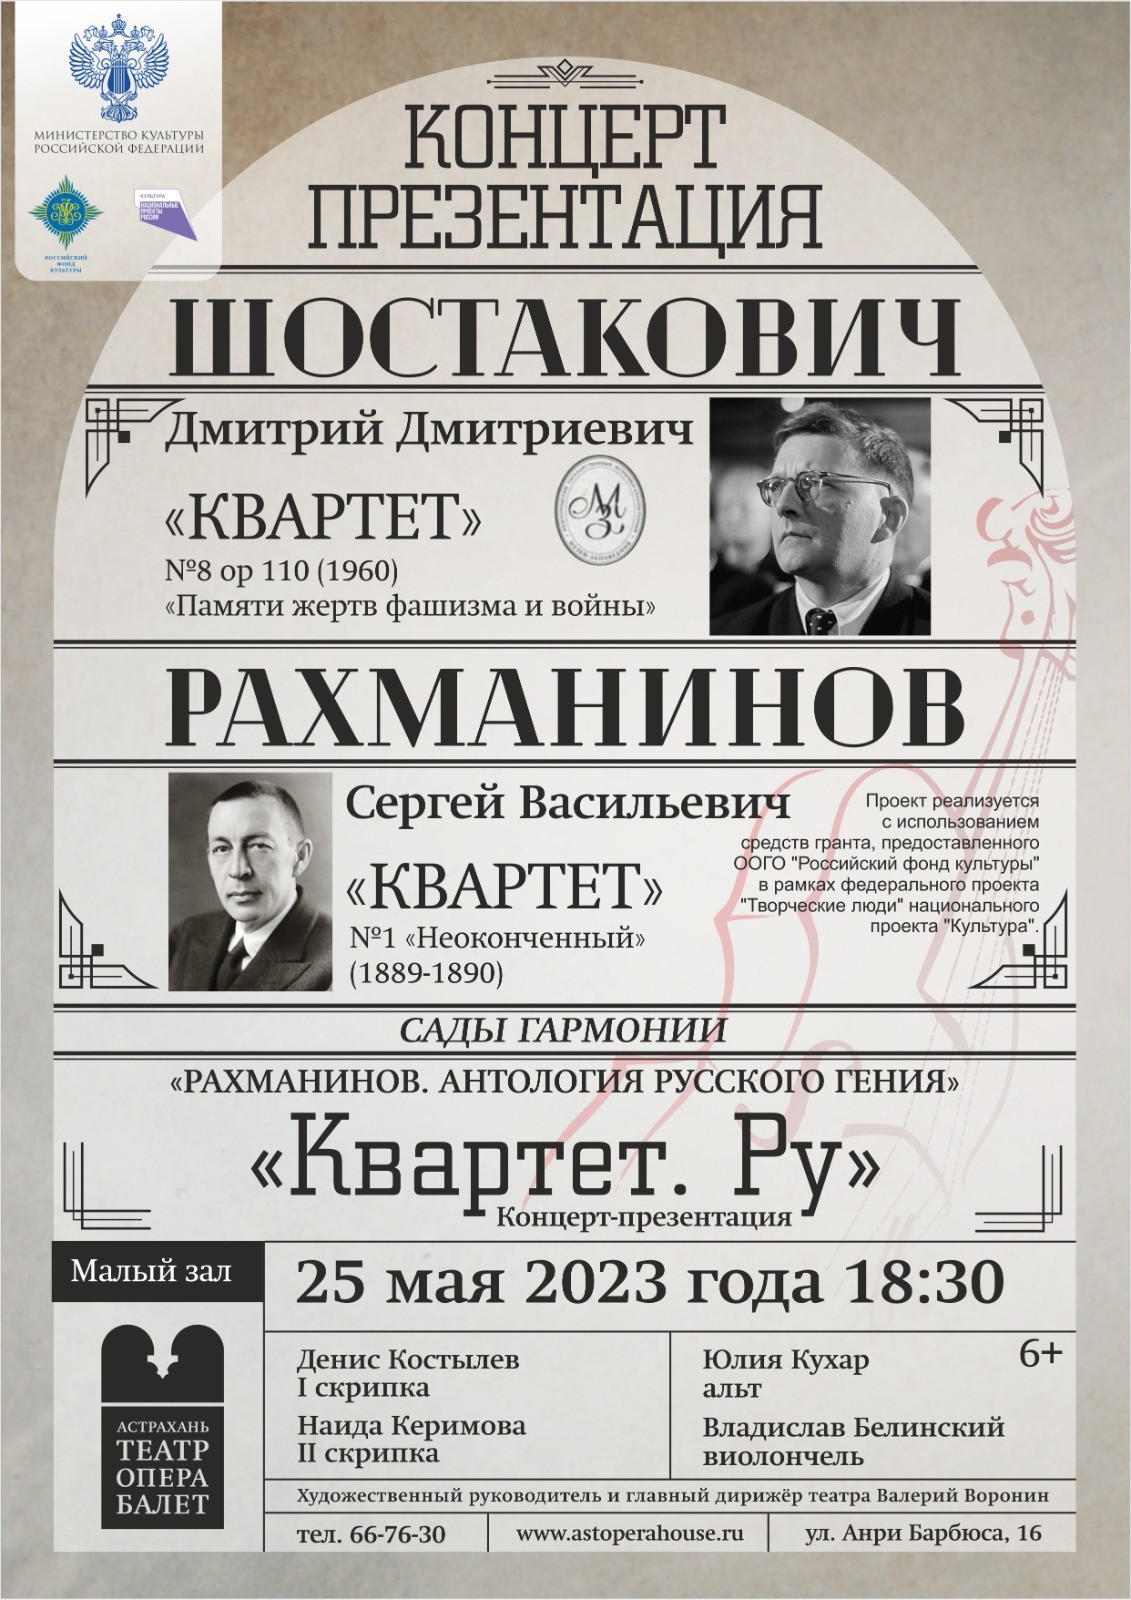 25 мая Астраханский театр оперы и балета представит камерно-инструментальную музыку Рахманинова и Шостаковича